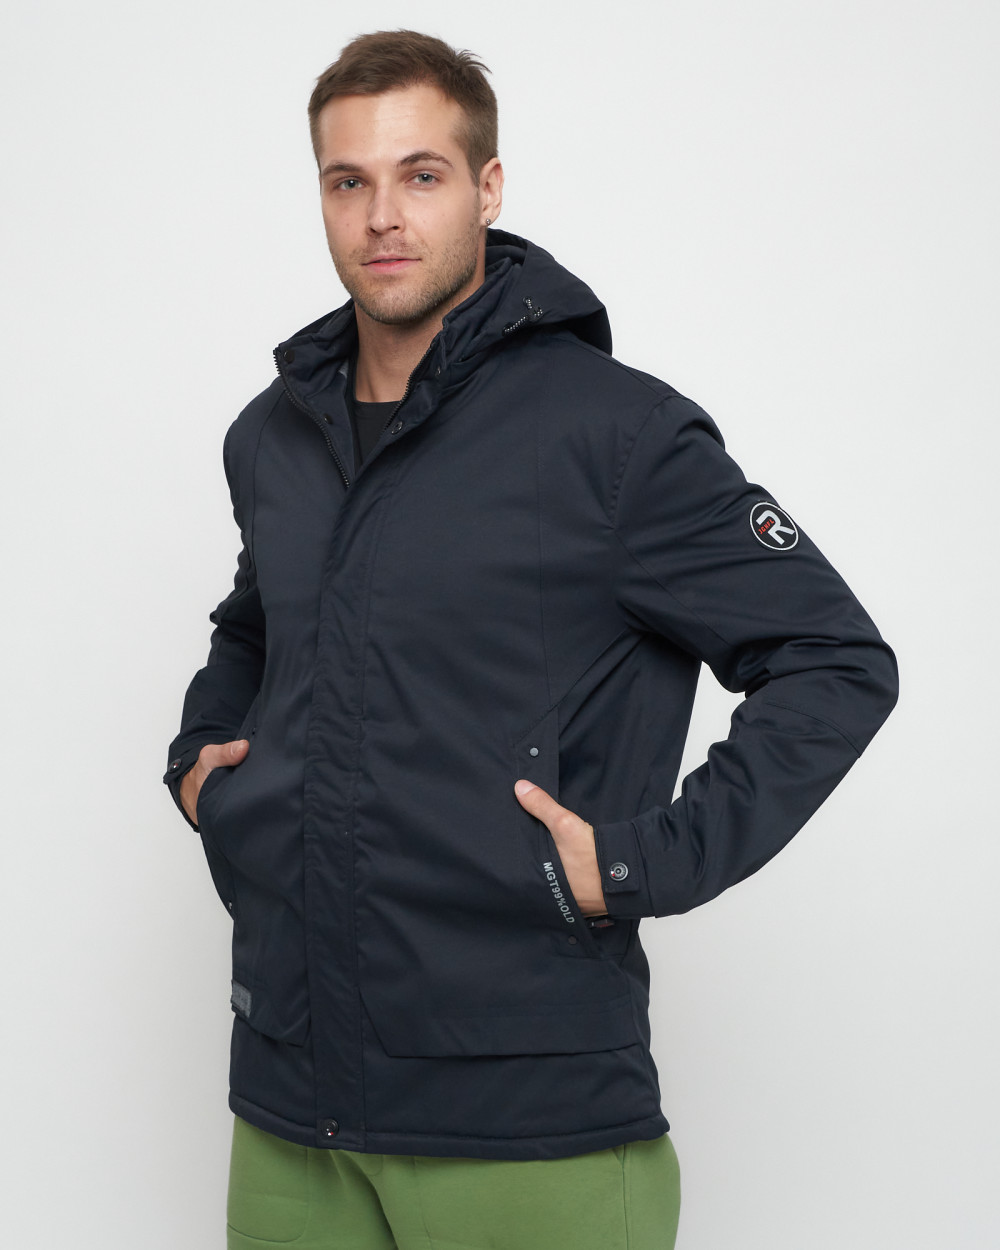 Купить куртку мужскую спортивную весеннюю оптом от производителя недорого в Москве 8599TS 1